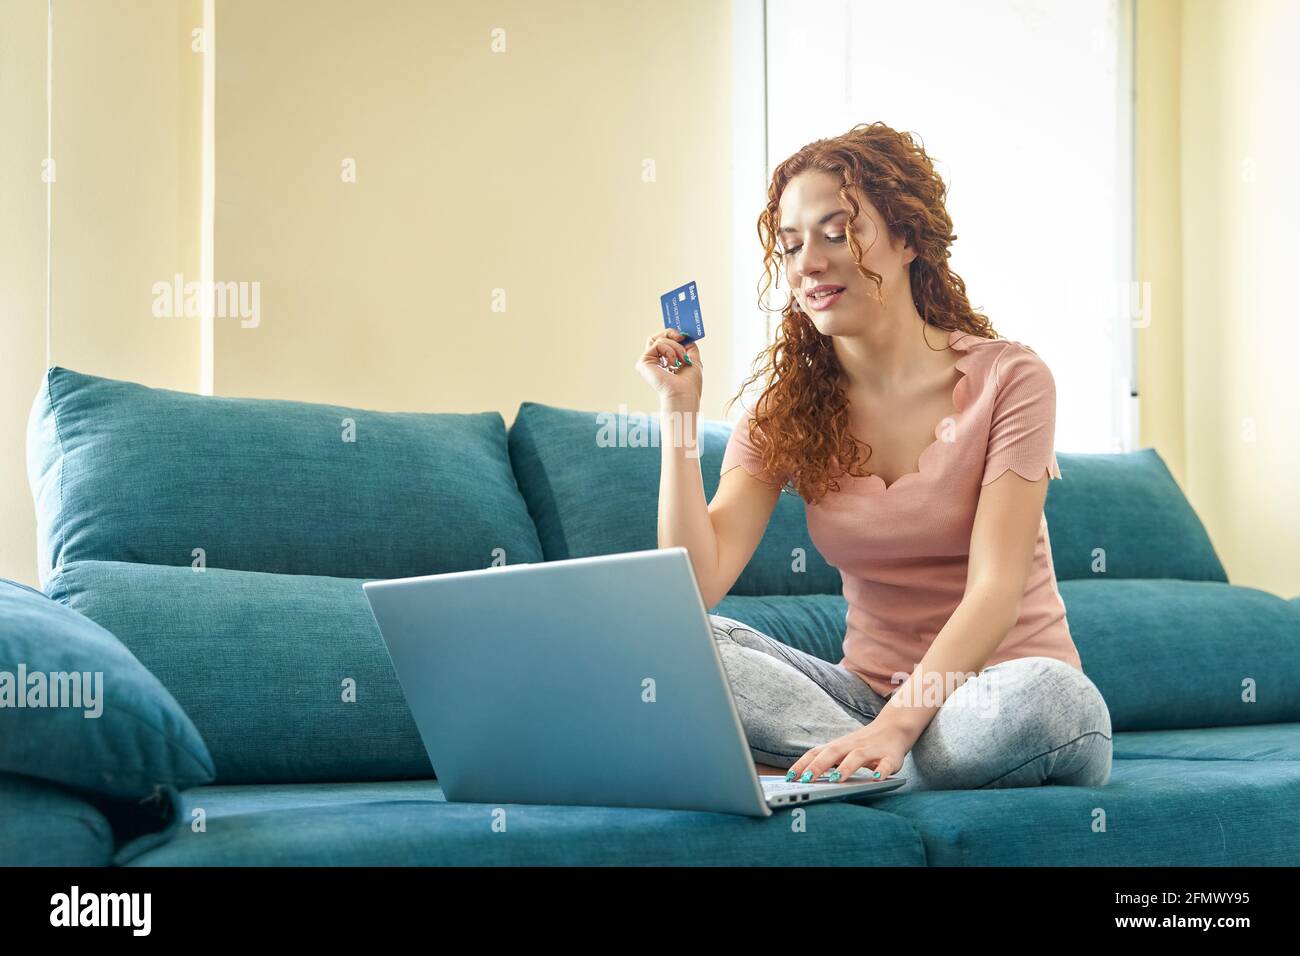 Sorridente ragazza millennial siede sul divano usando l'acquisto del laptop su Internet inserire i dettagli della carta di credito, concetto di servizio di sistema bancario facile. Foto di alta qualità Foto Stock